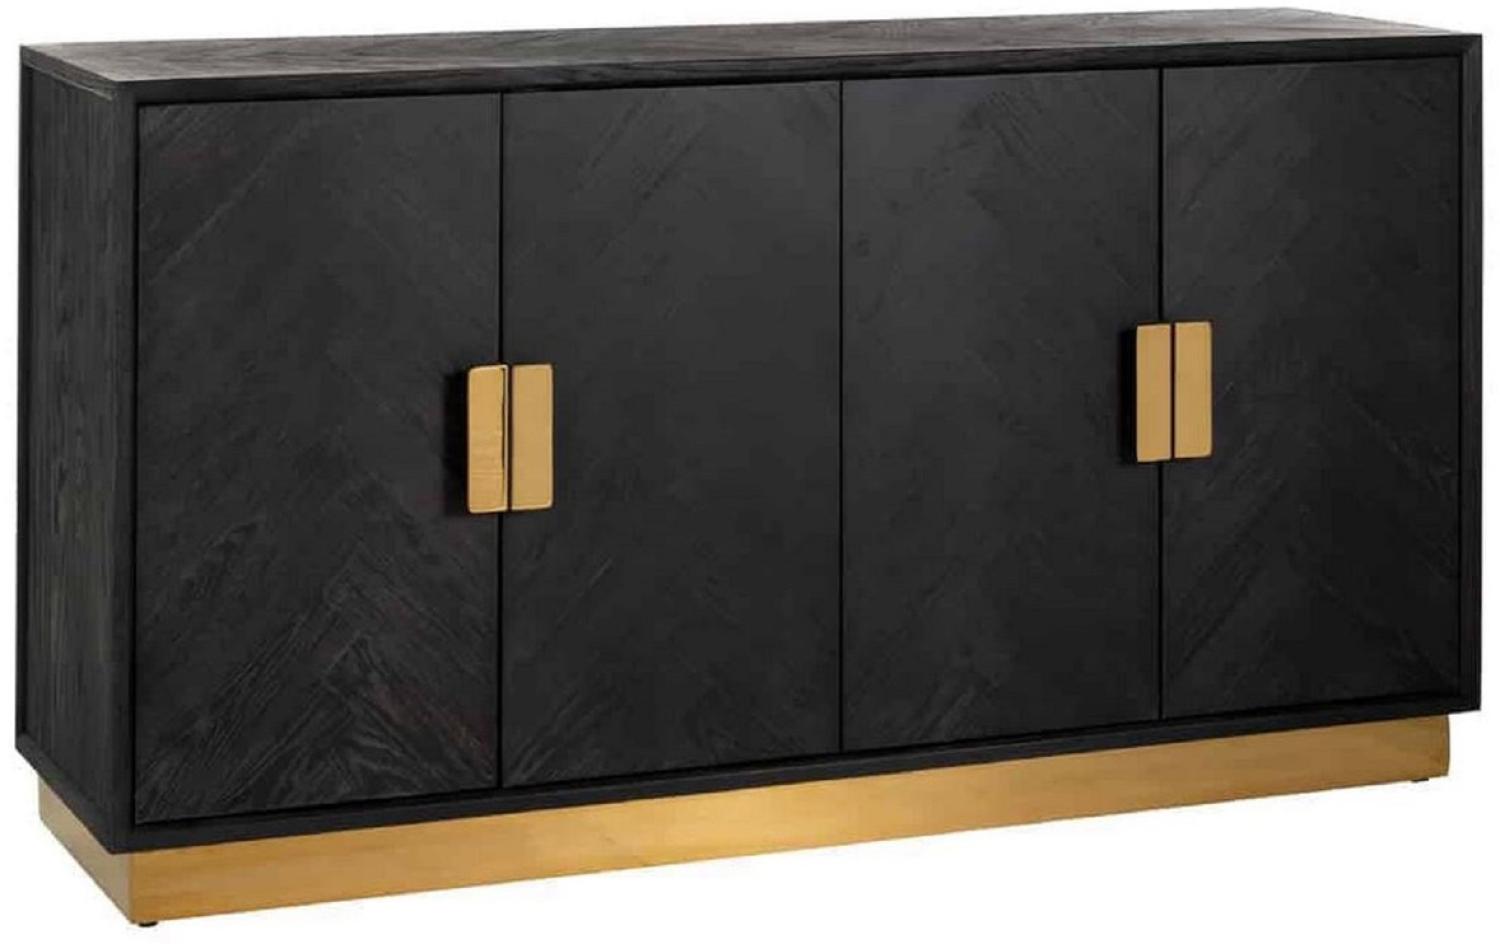 Casa Padrino Luxus Sideboard Schwarz / Gold 160 x 45 x H. 86 cm - Massivholz Schrank mit 4 Türen - Wohnzimmer Möbel - Hotel Möbel - Luxus Kollektion Bild 1